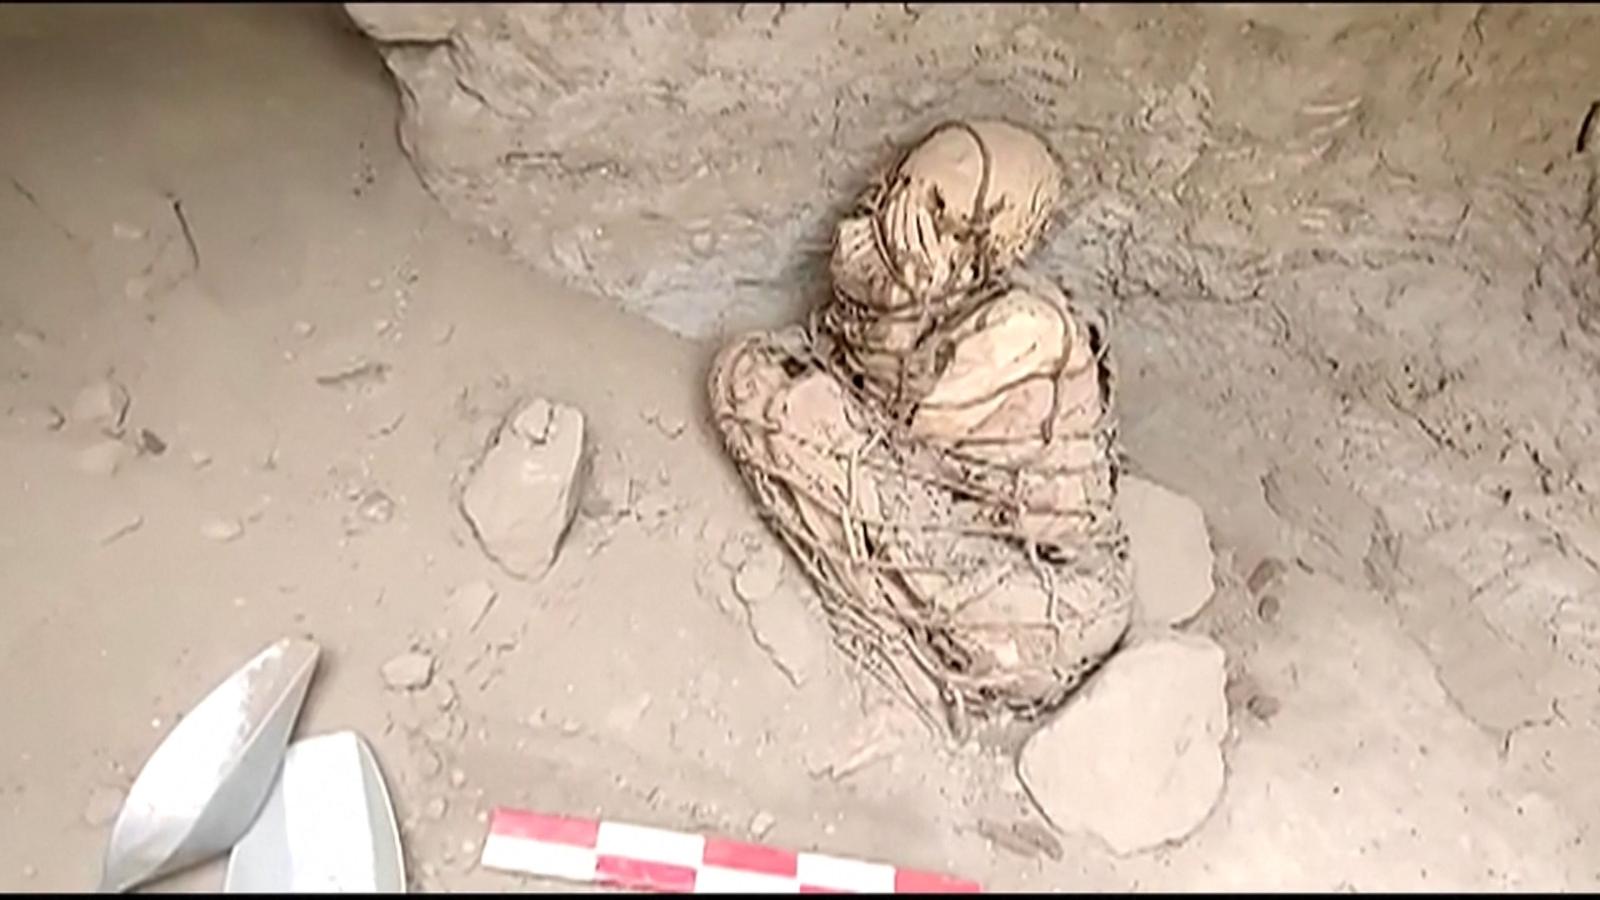 Neįprastas radinys: archeologai Peru aptiko supančiotą mumiją